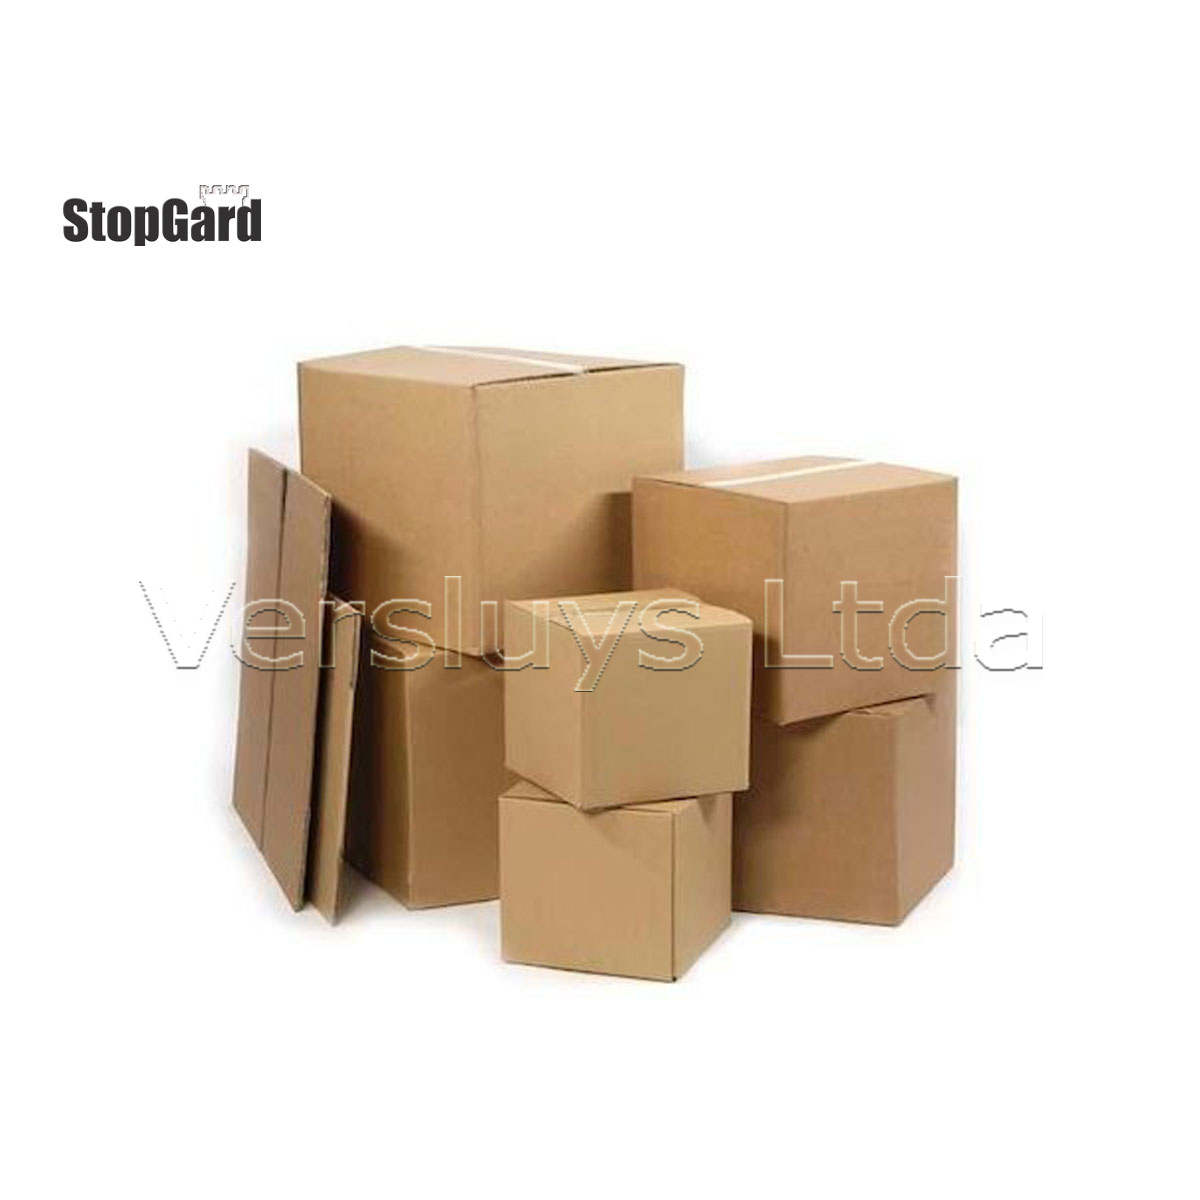 Venta de cajas de cartón - Venta de cajas de cartón